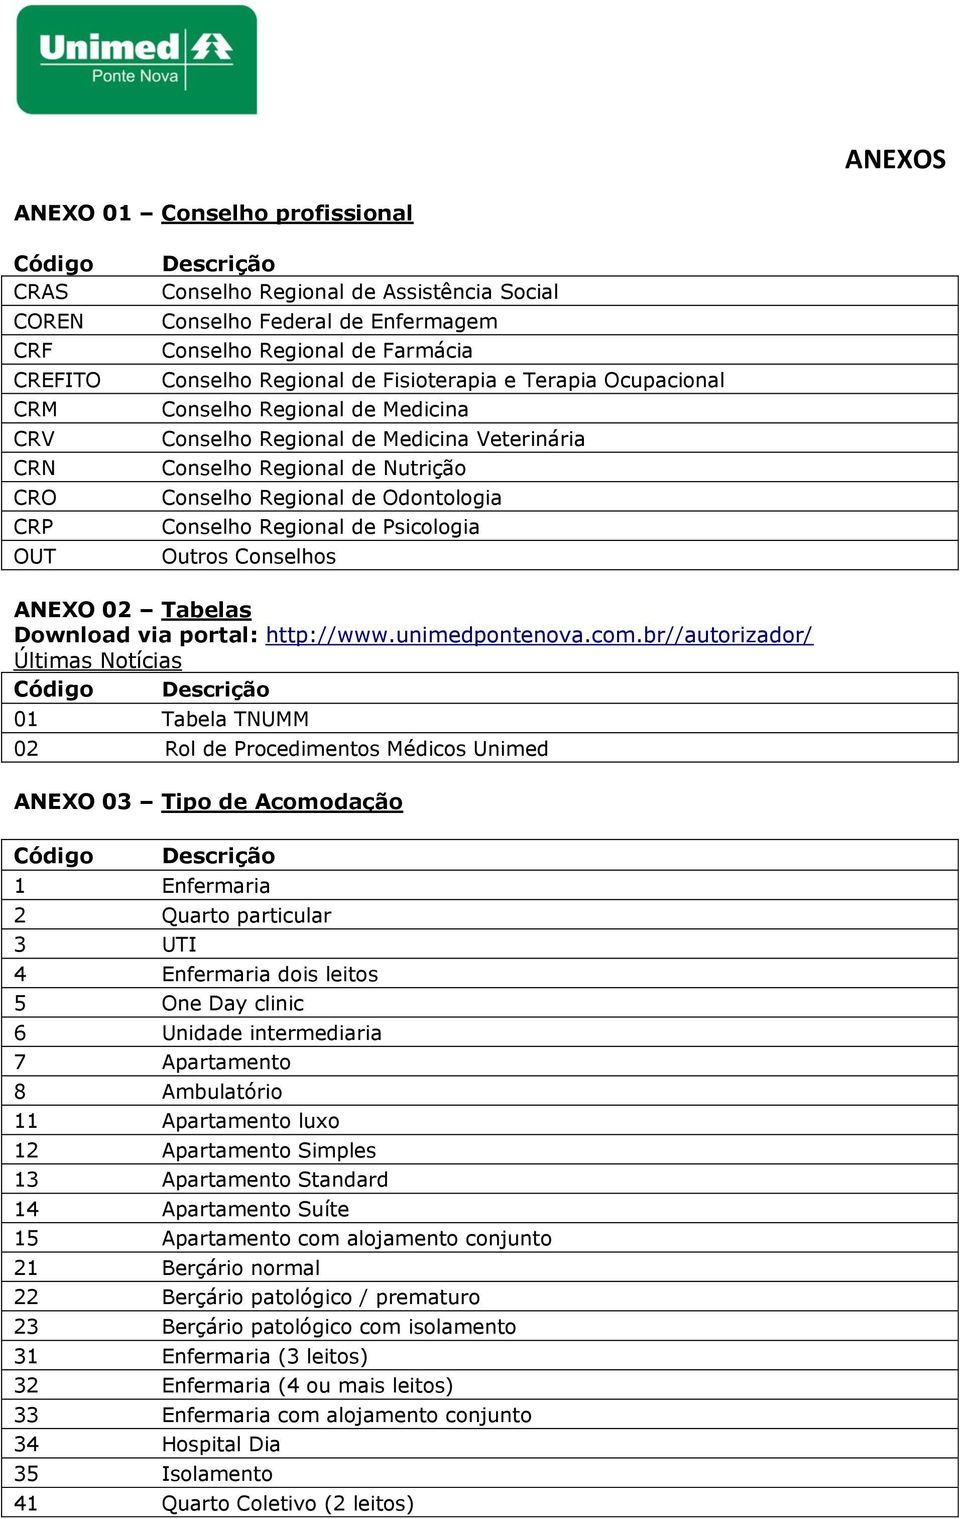 Conselho Regional de Psicologia Outros Conselhos ANEXO 02 Tabelas Download via portal: http://www.unimedpontenova.com.